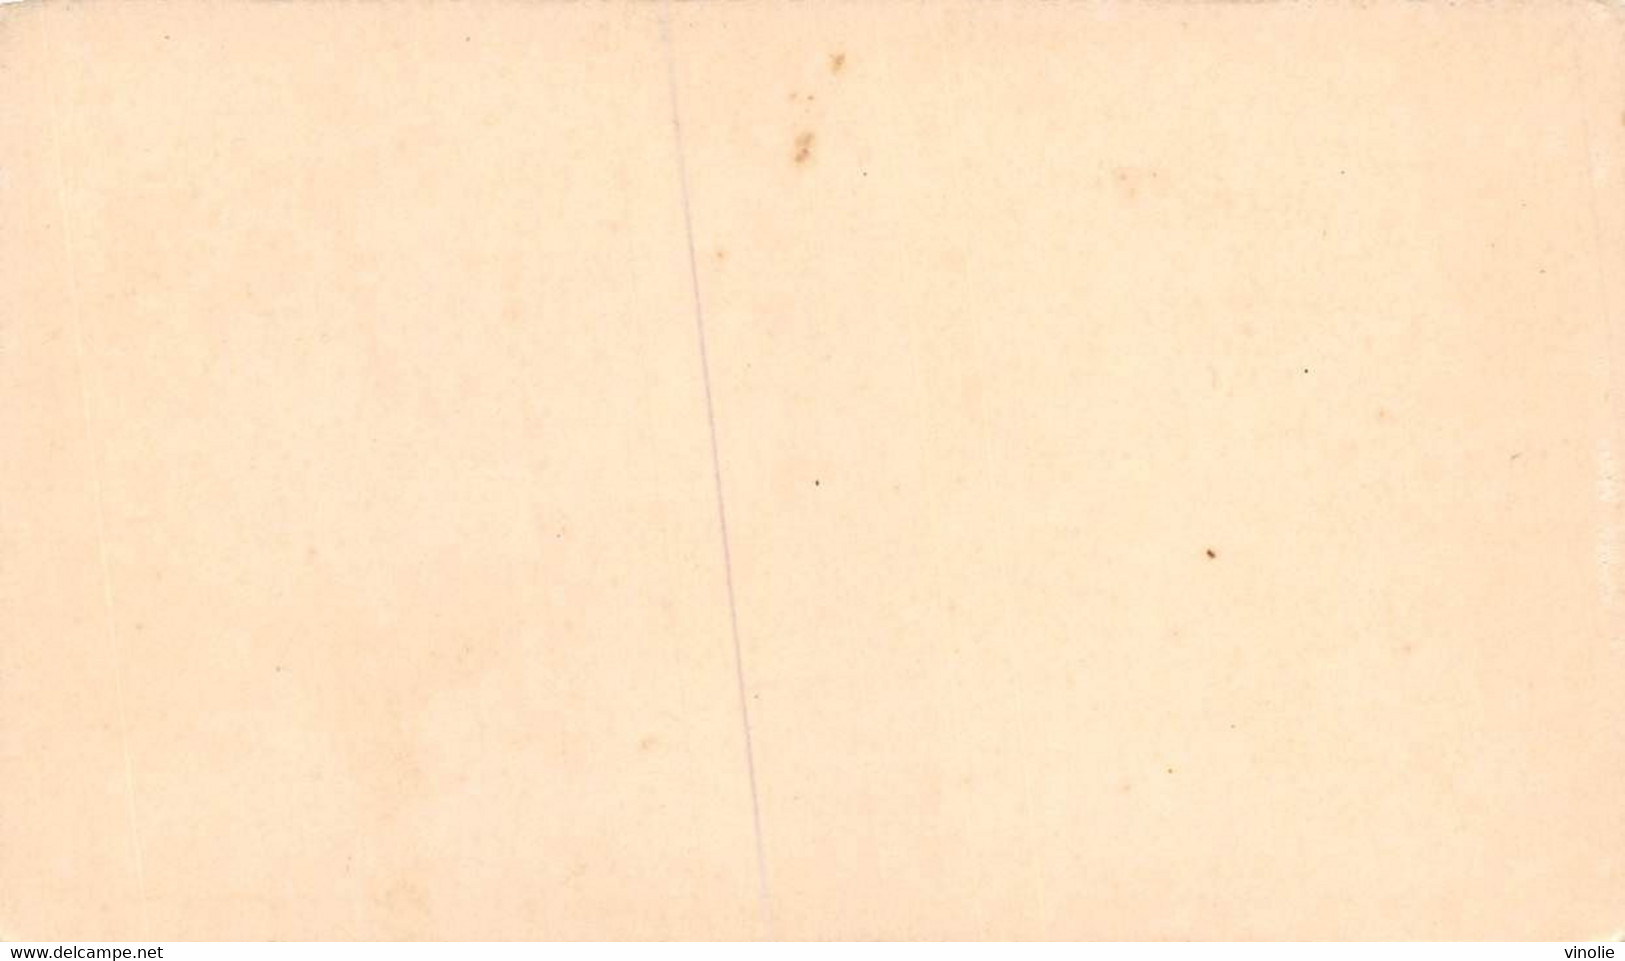 P.21-FO-1582 : IMAGE. CHROMOLITHOGRAPHIE. THEME MONNAIE. PIECE DE 5 F ARGENT. LOUIS PHILIPPE 1840 - Non Classés